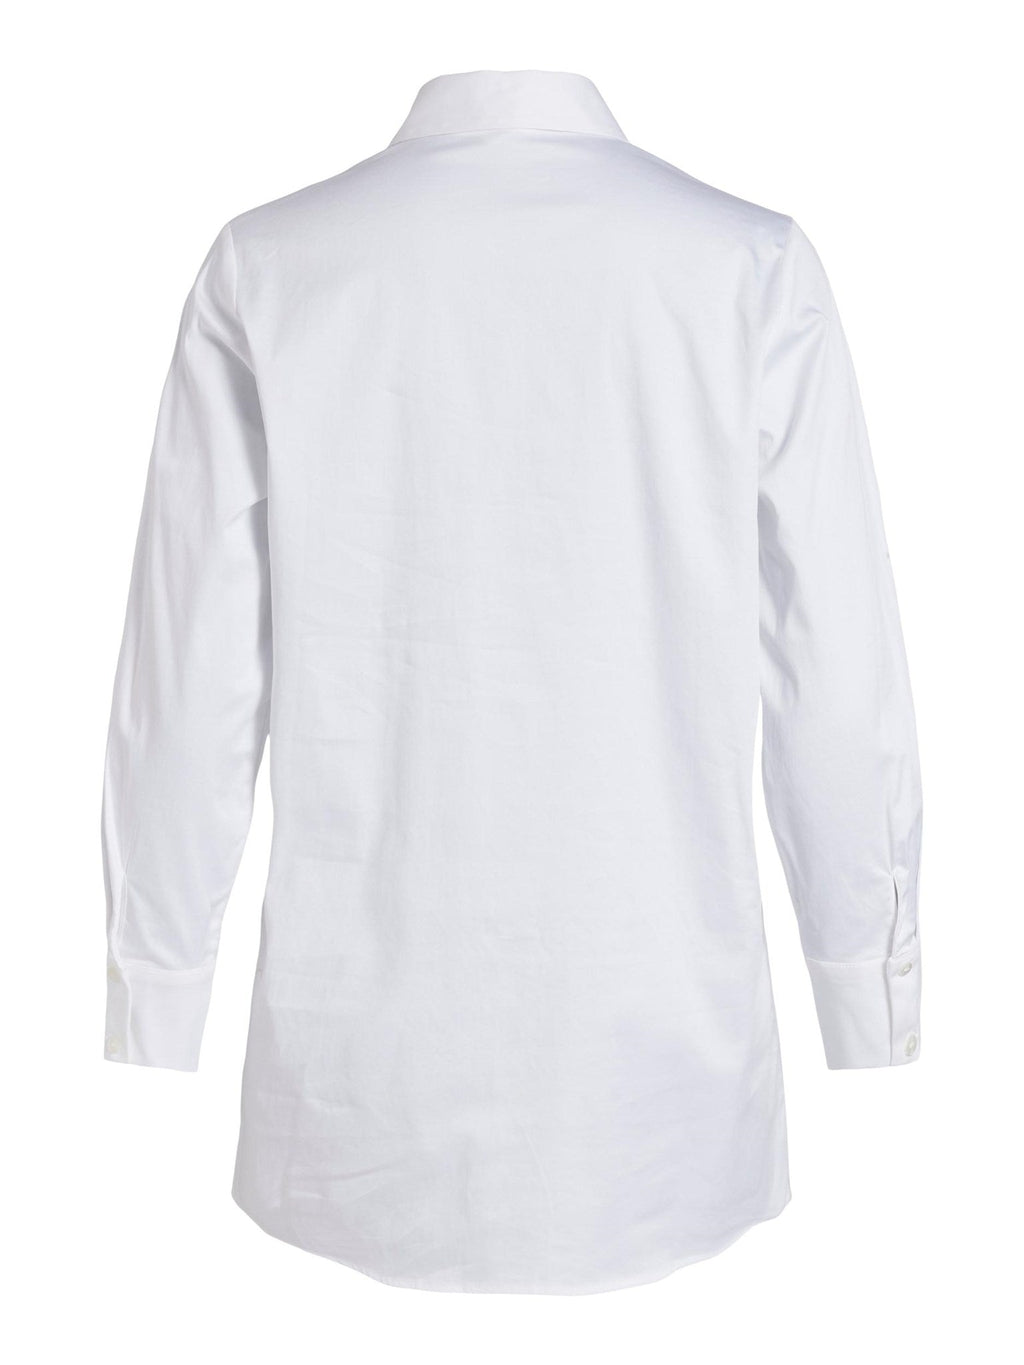 Camicia lunga roxa - bianco